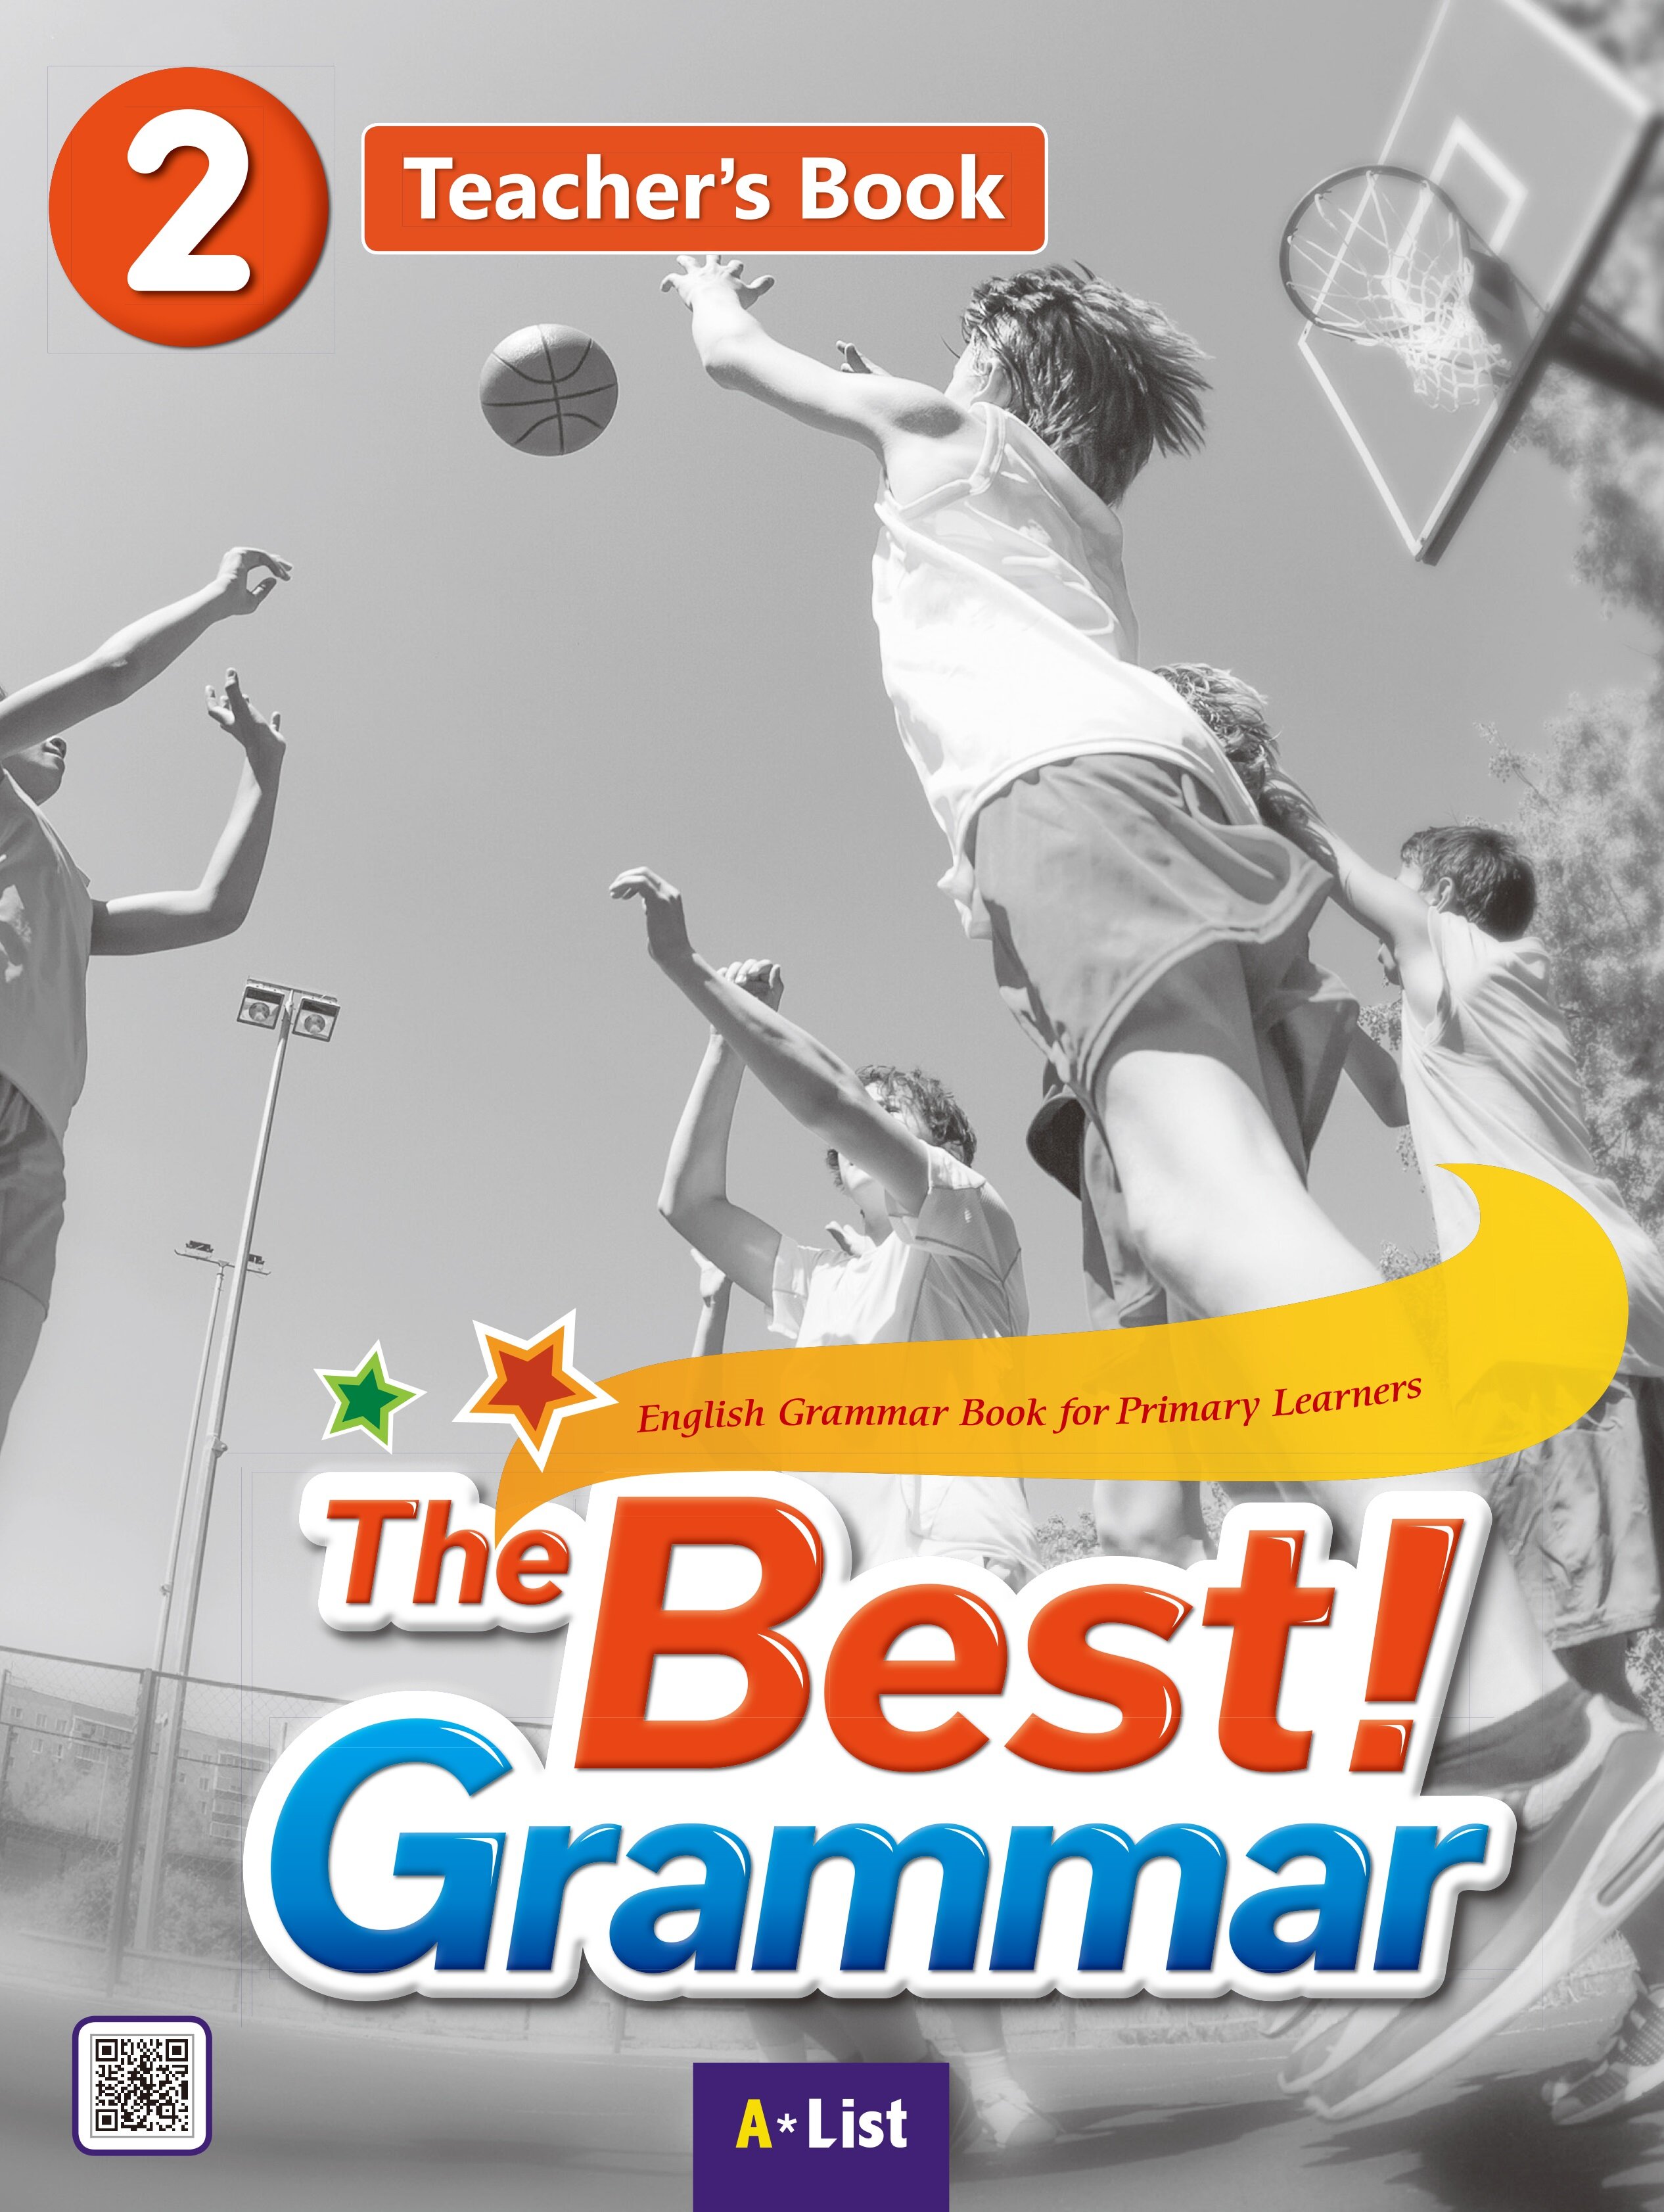 The Best Grammar 2 : Teachers Book (Teachers Resource CD + Worksheet)